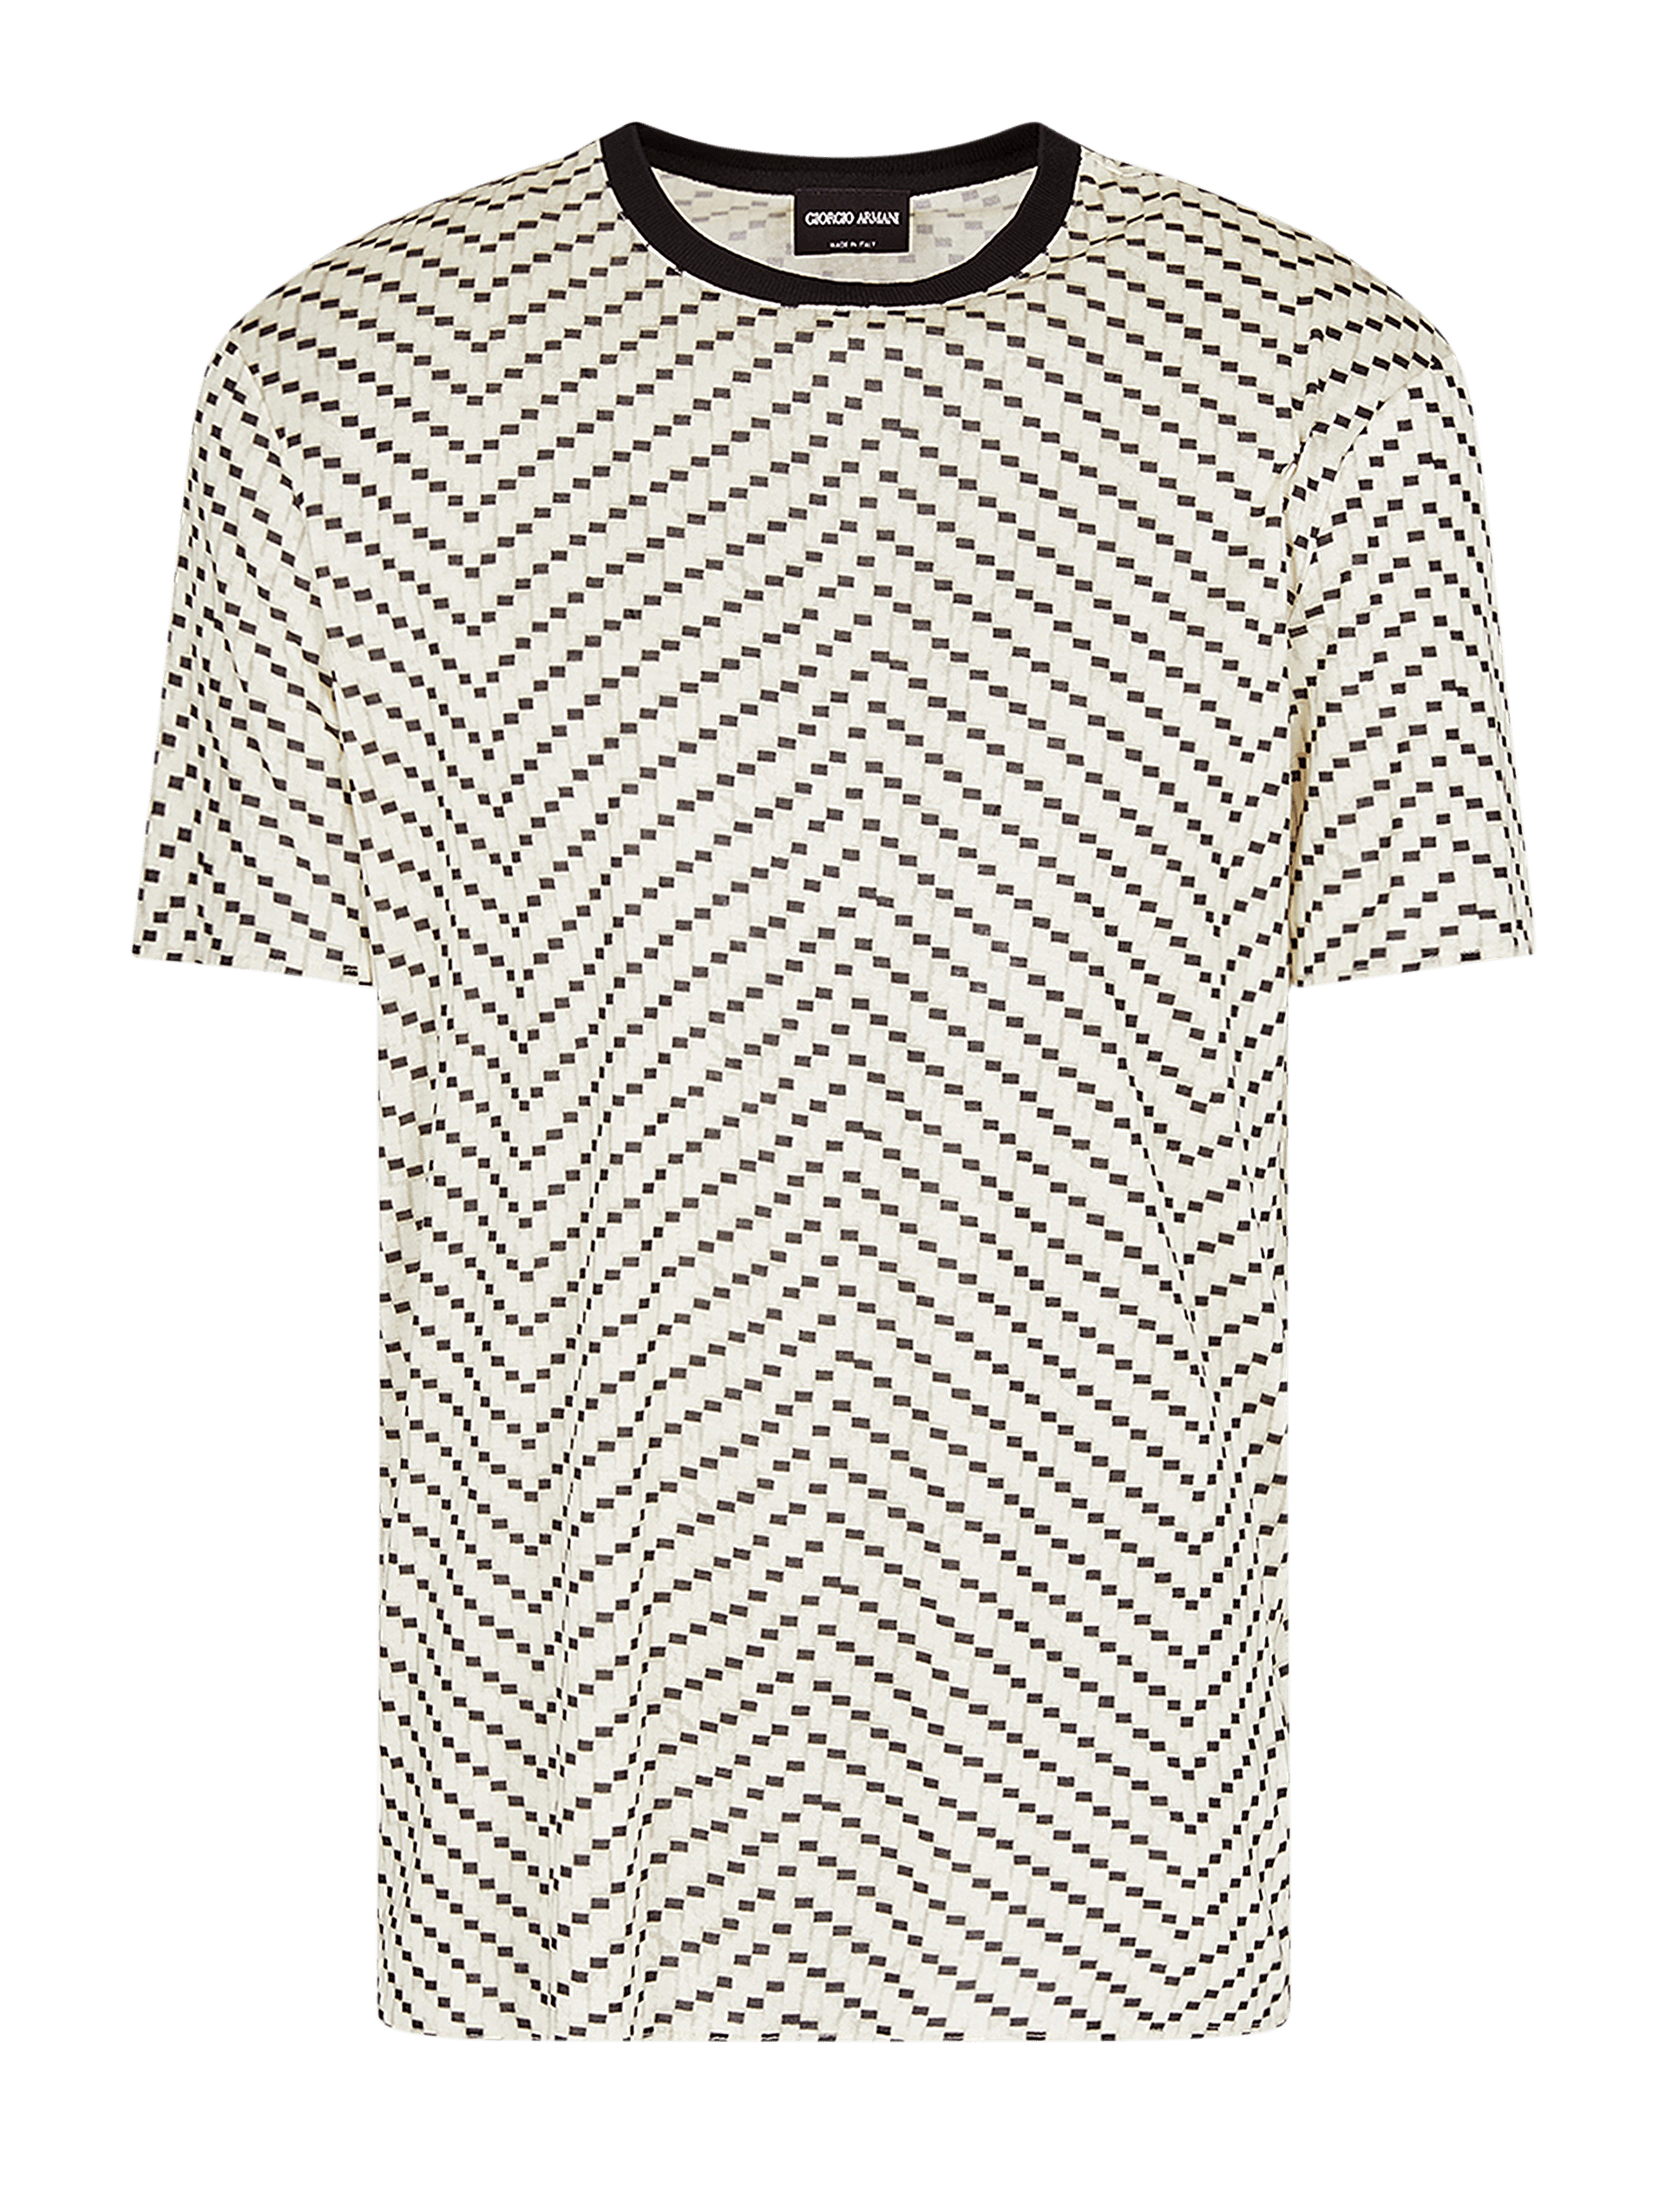 Camiseta Masculina de Seda com Gola Contrastante